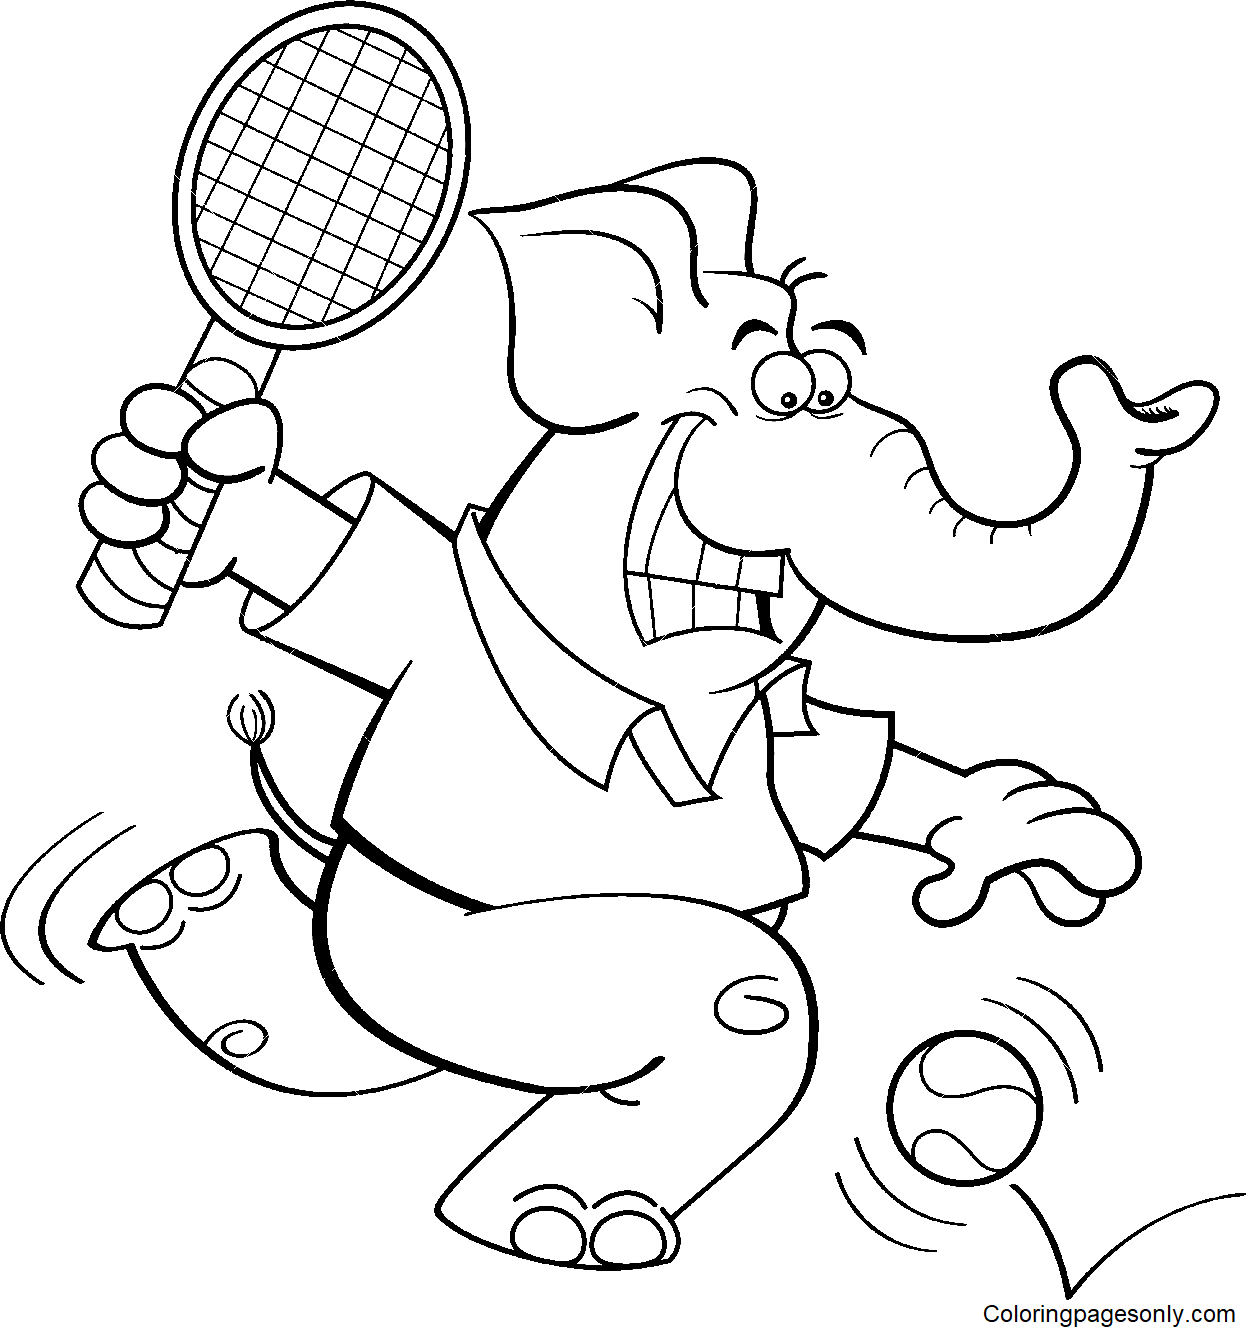 Elefant spielt Tennis vom Tennis